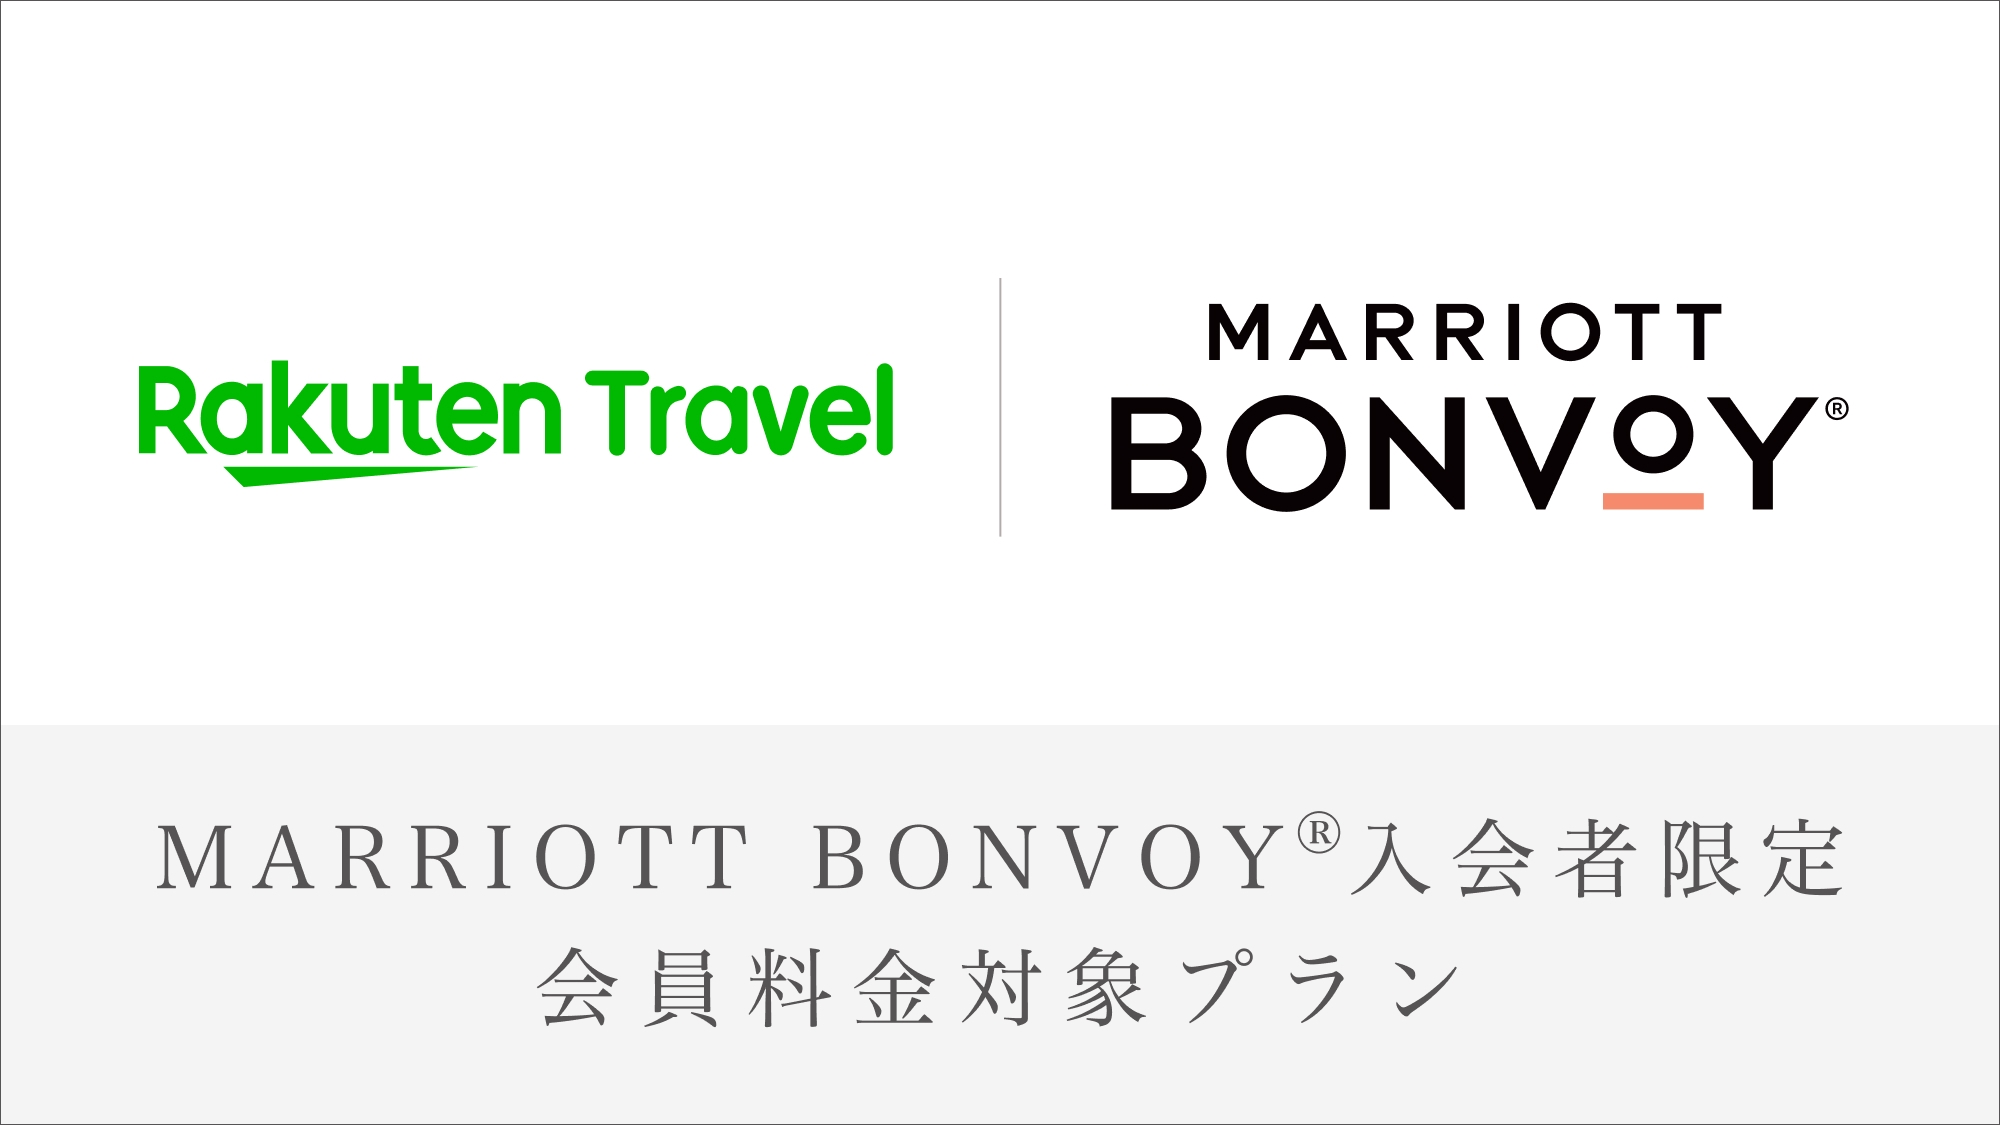 【Marriott Bonvoy会員対象プラン】ベストレート(朝食付)